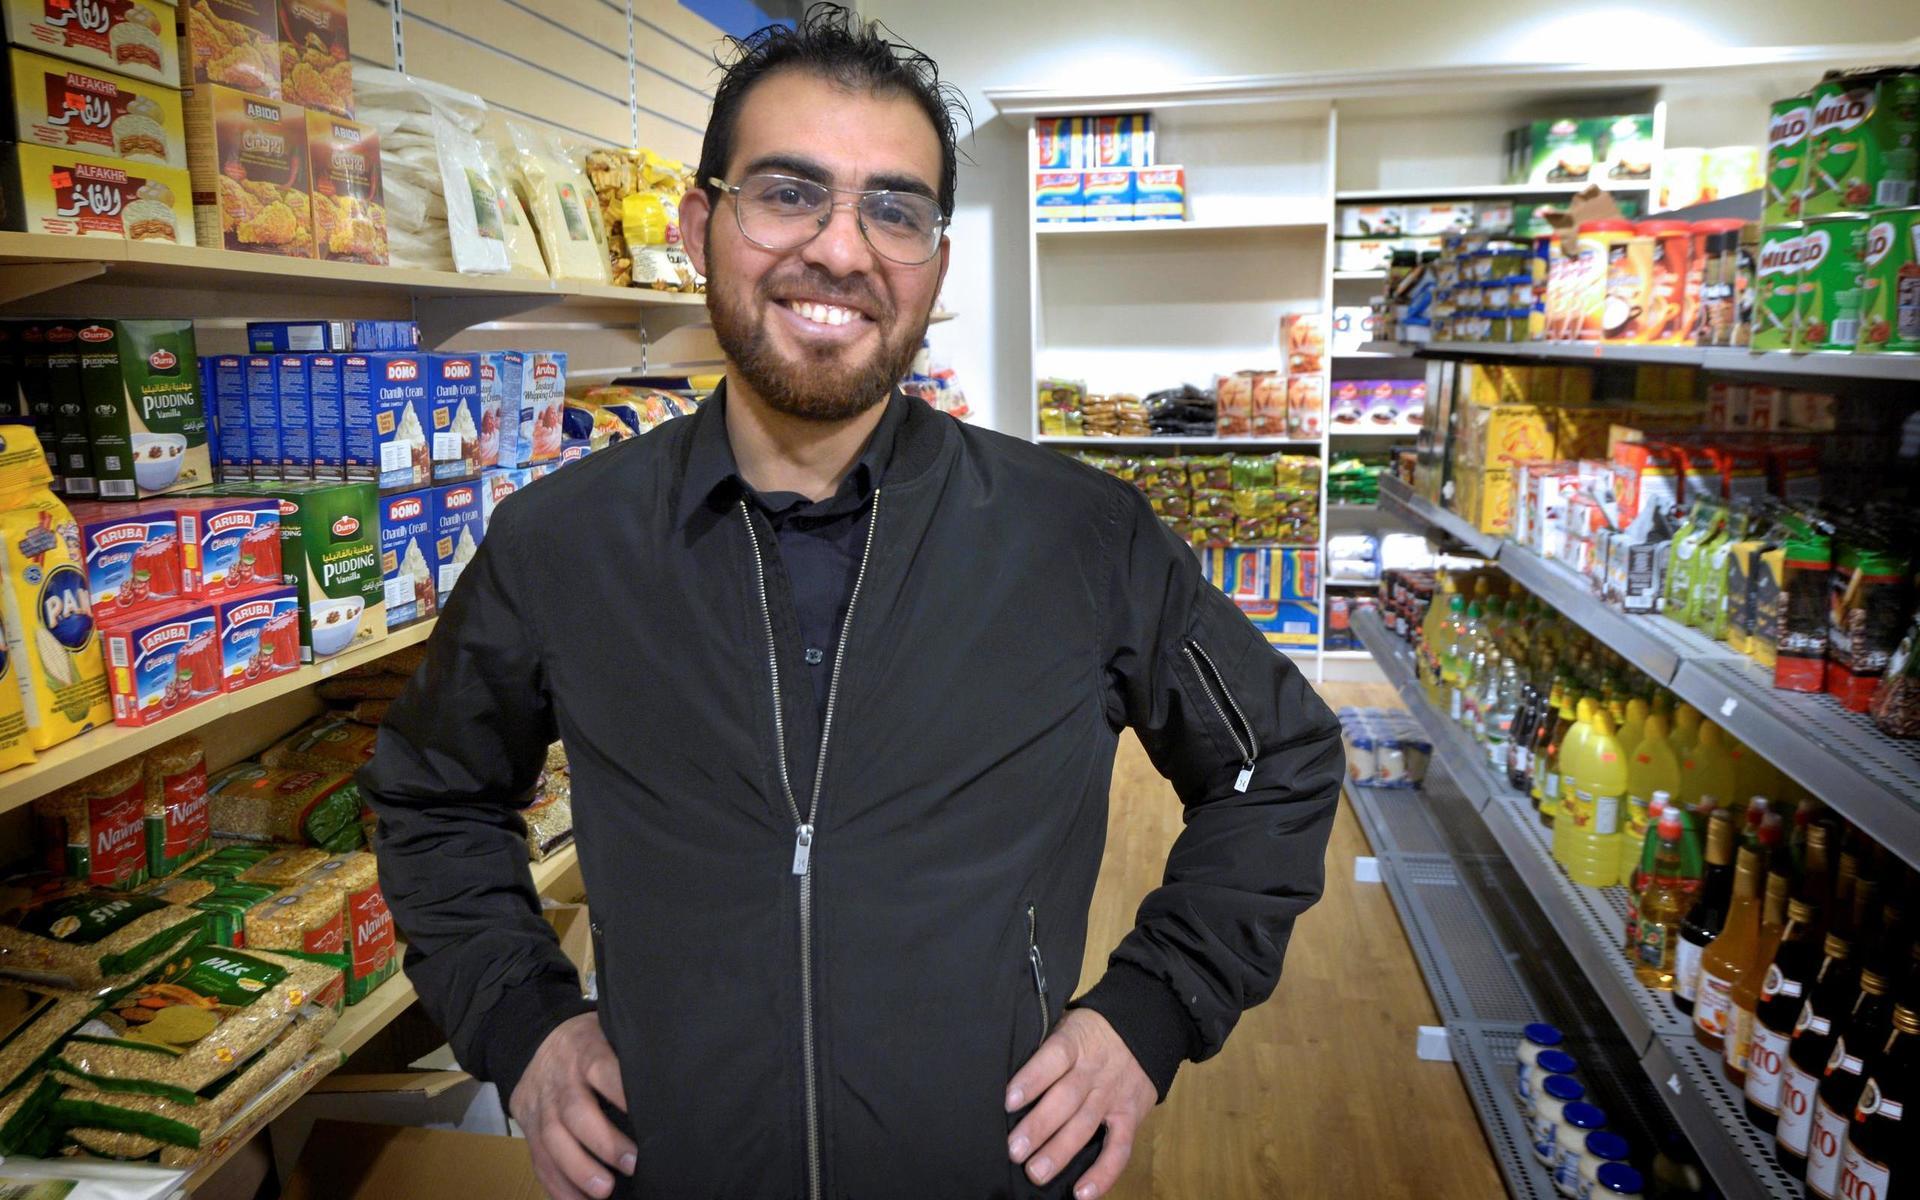 När Mahmoud Alebrahim öppnade  livsmedelsbutik förra hösten var tongångarna positiva. Nu har affären stängt efter ett inbrott. Arkivbild.